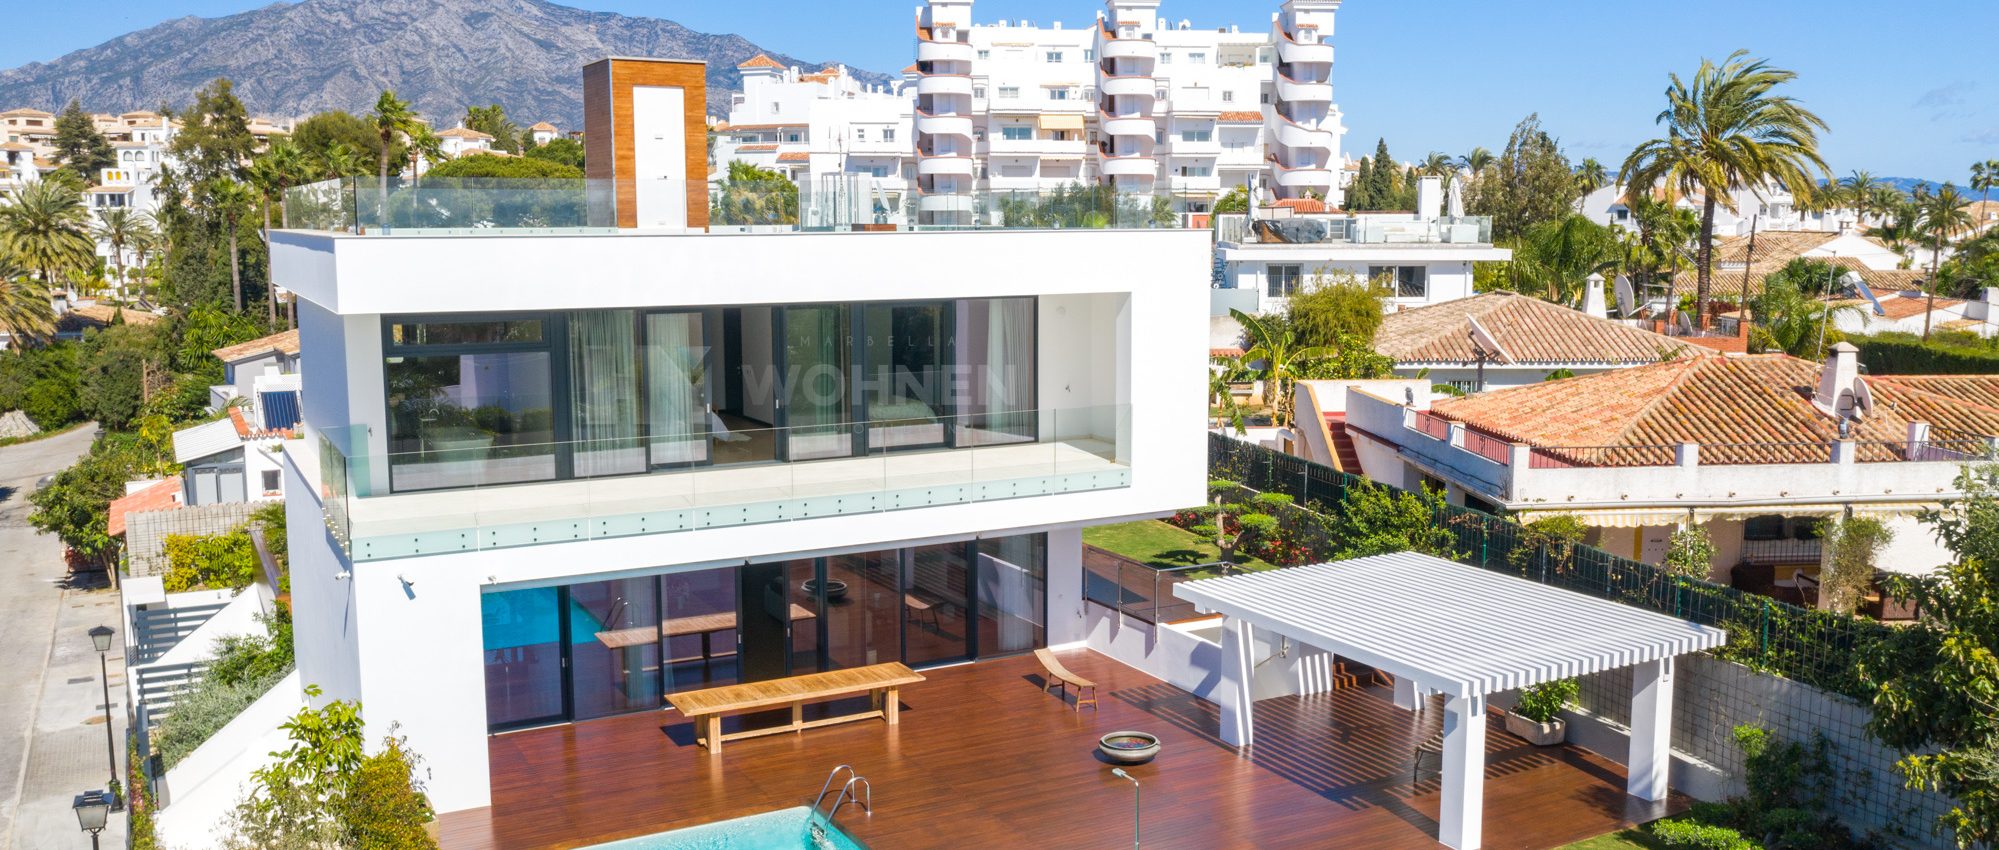 Beeindruckende, neu gebaute Qualitätsvilla in Gehweite zu Puerto Banus Marbella